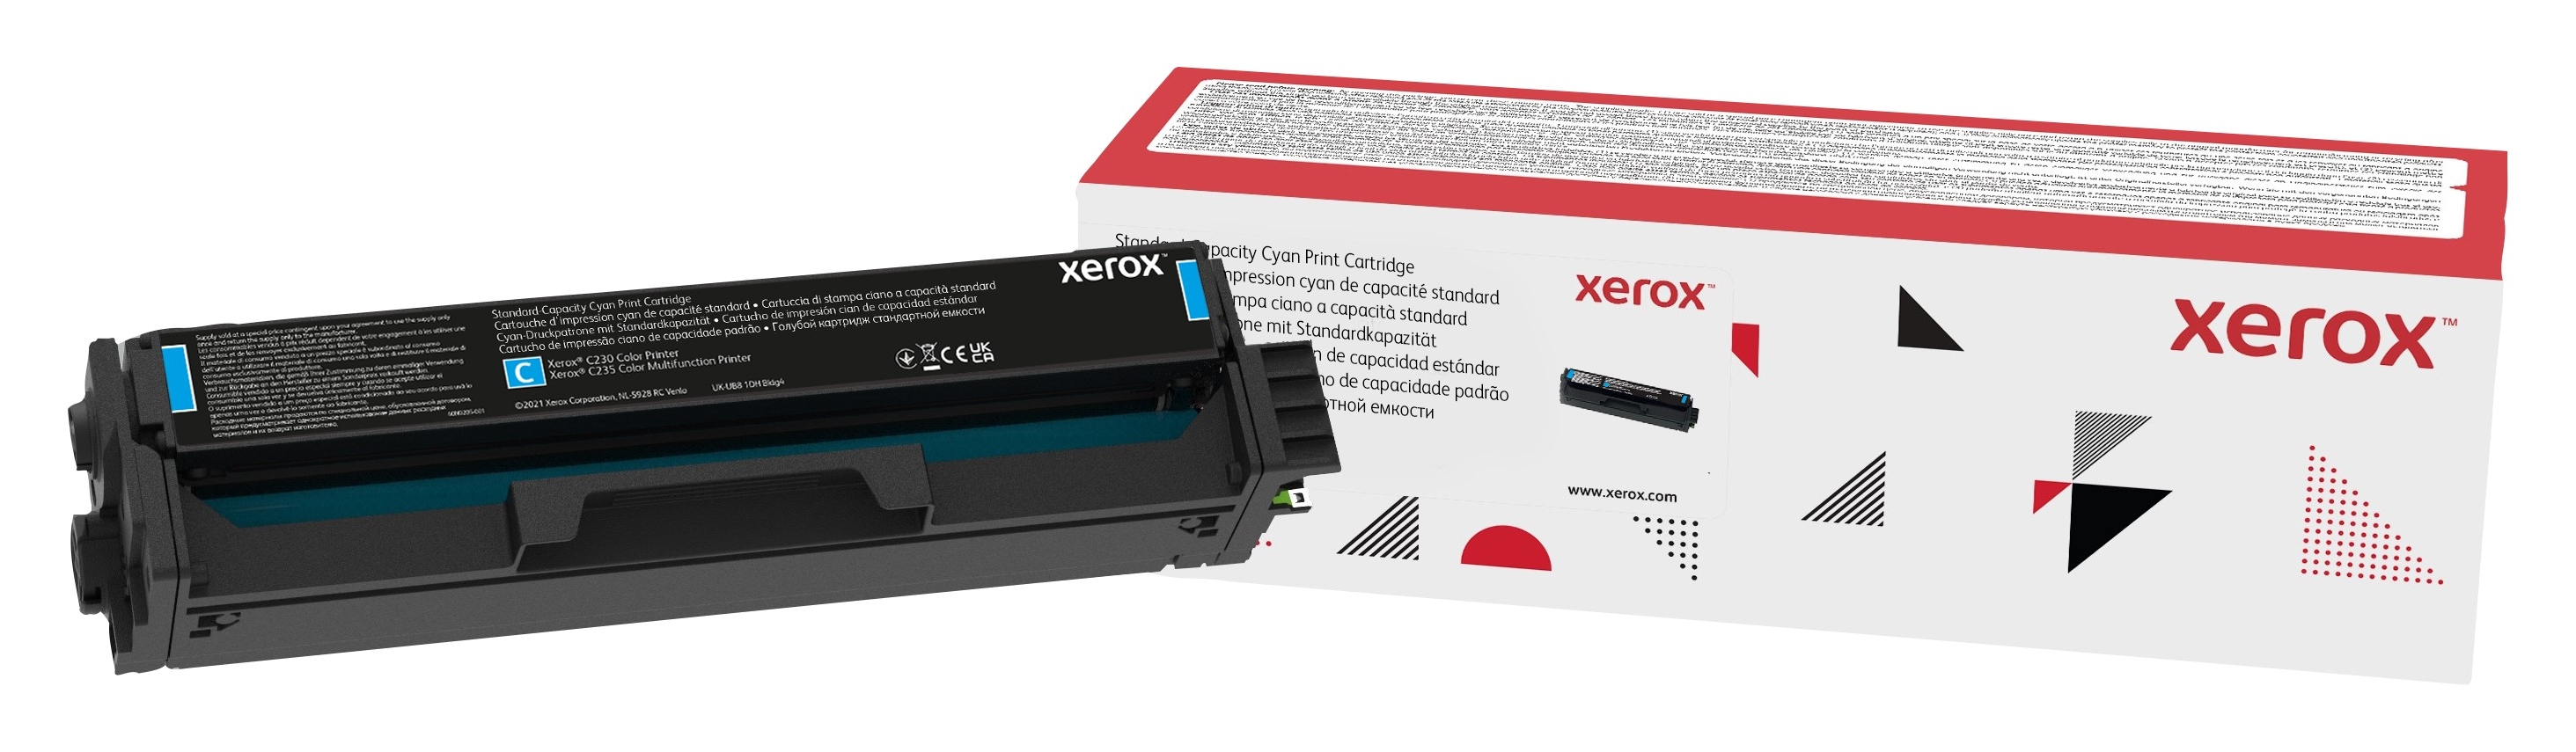 Xerox C230/C235 Cartuccia toner capacità standard ciano (1.500 pagine)  006R04384 Genuine Xerox Supplies